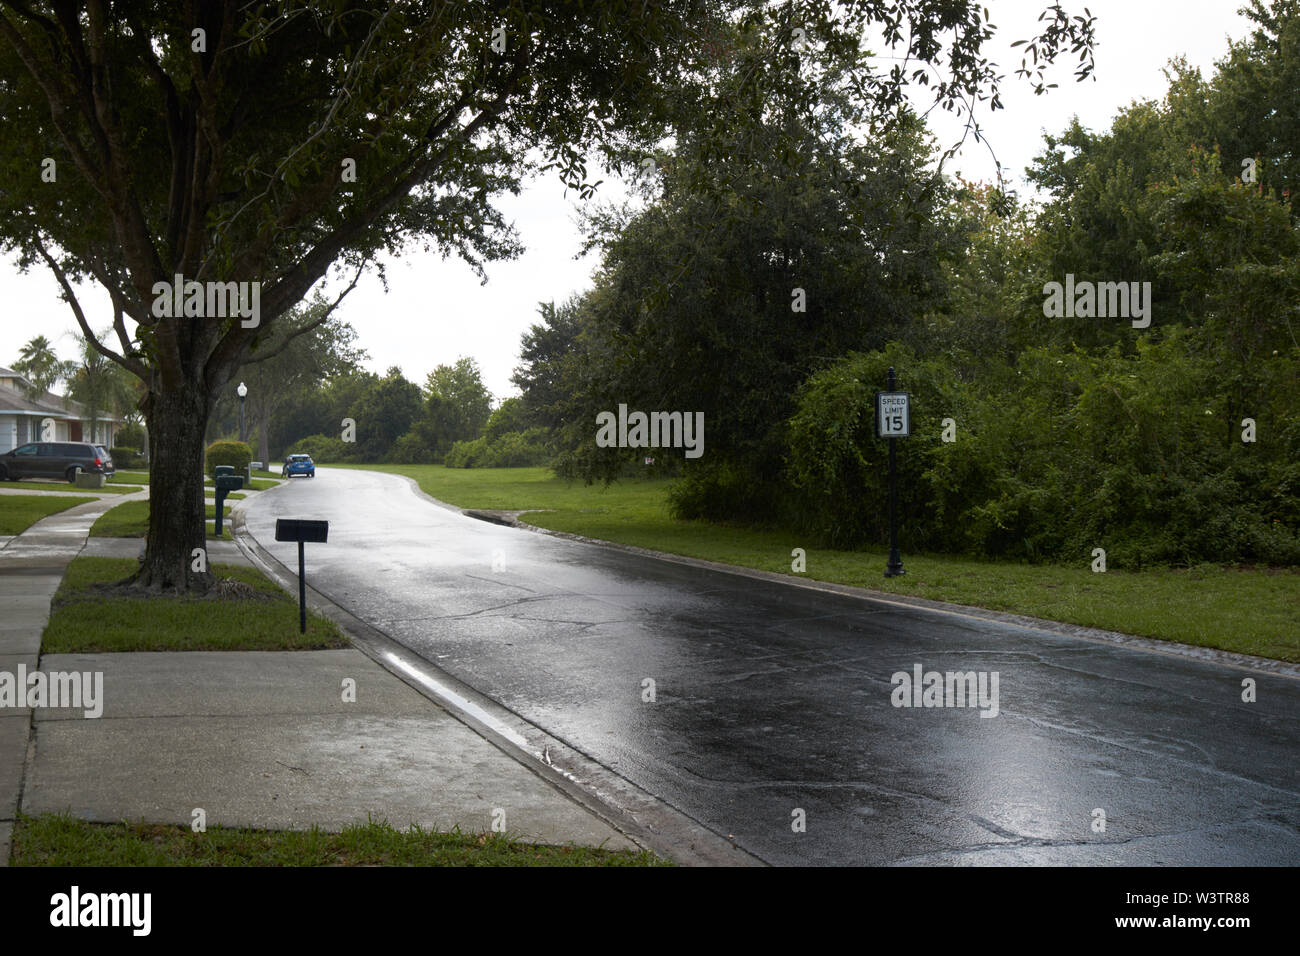 Sentier de la pluie sur le trottoir par communauté fermée à Kissimmee au cours de jour d'été orageux nuages Florida USA United States of America Banque D'Images